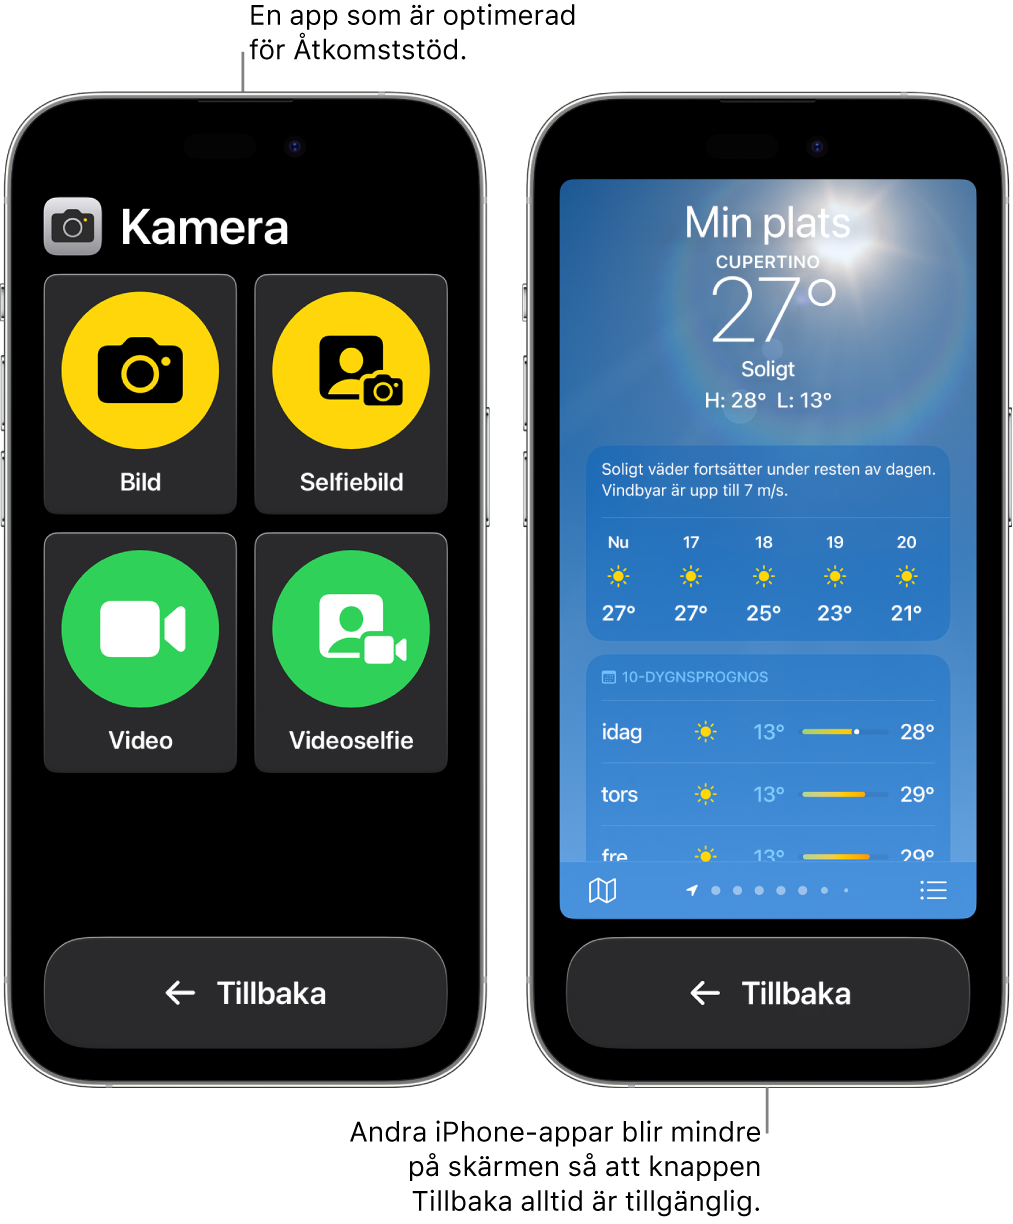 Två iPhone-enheter i Åtkomststöd. En iPhone visar en app som är utformad för Åtkomststöd med ett stort rutnät knappar. Den andra visar en app som inte är gjord för Åtkomststöd och i sin originaldesign. Appen är mindre på skärmen och har en stor Tillbaka-knapp i nederkanten.